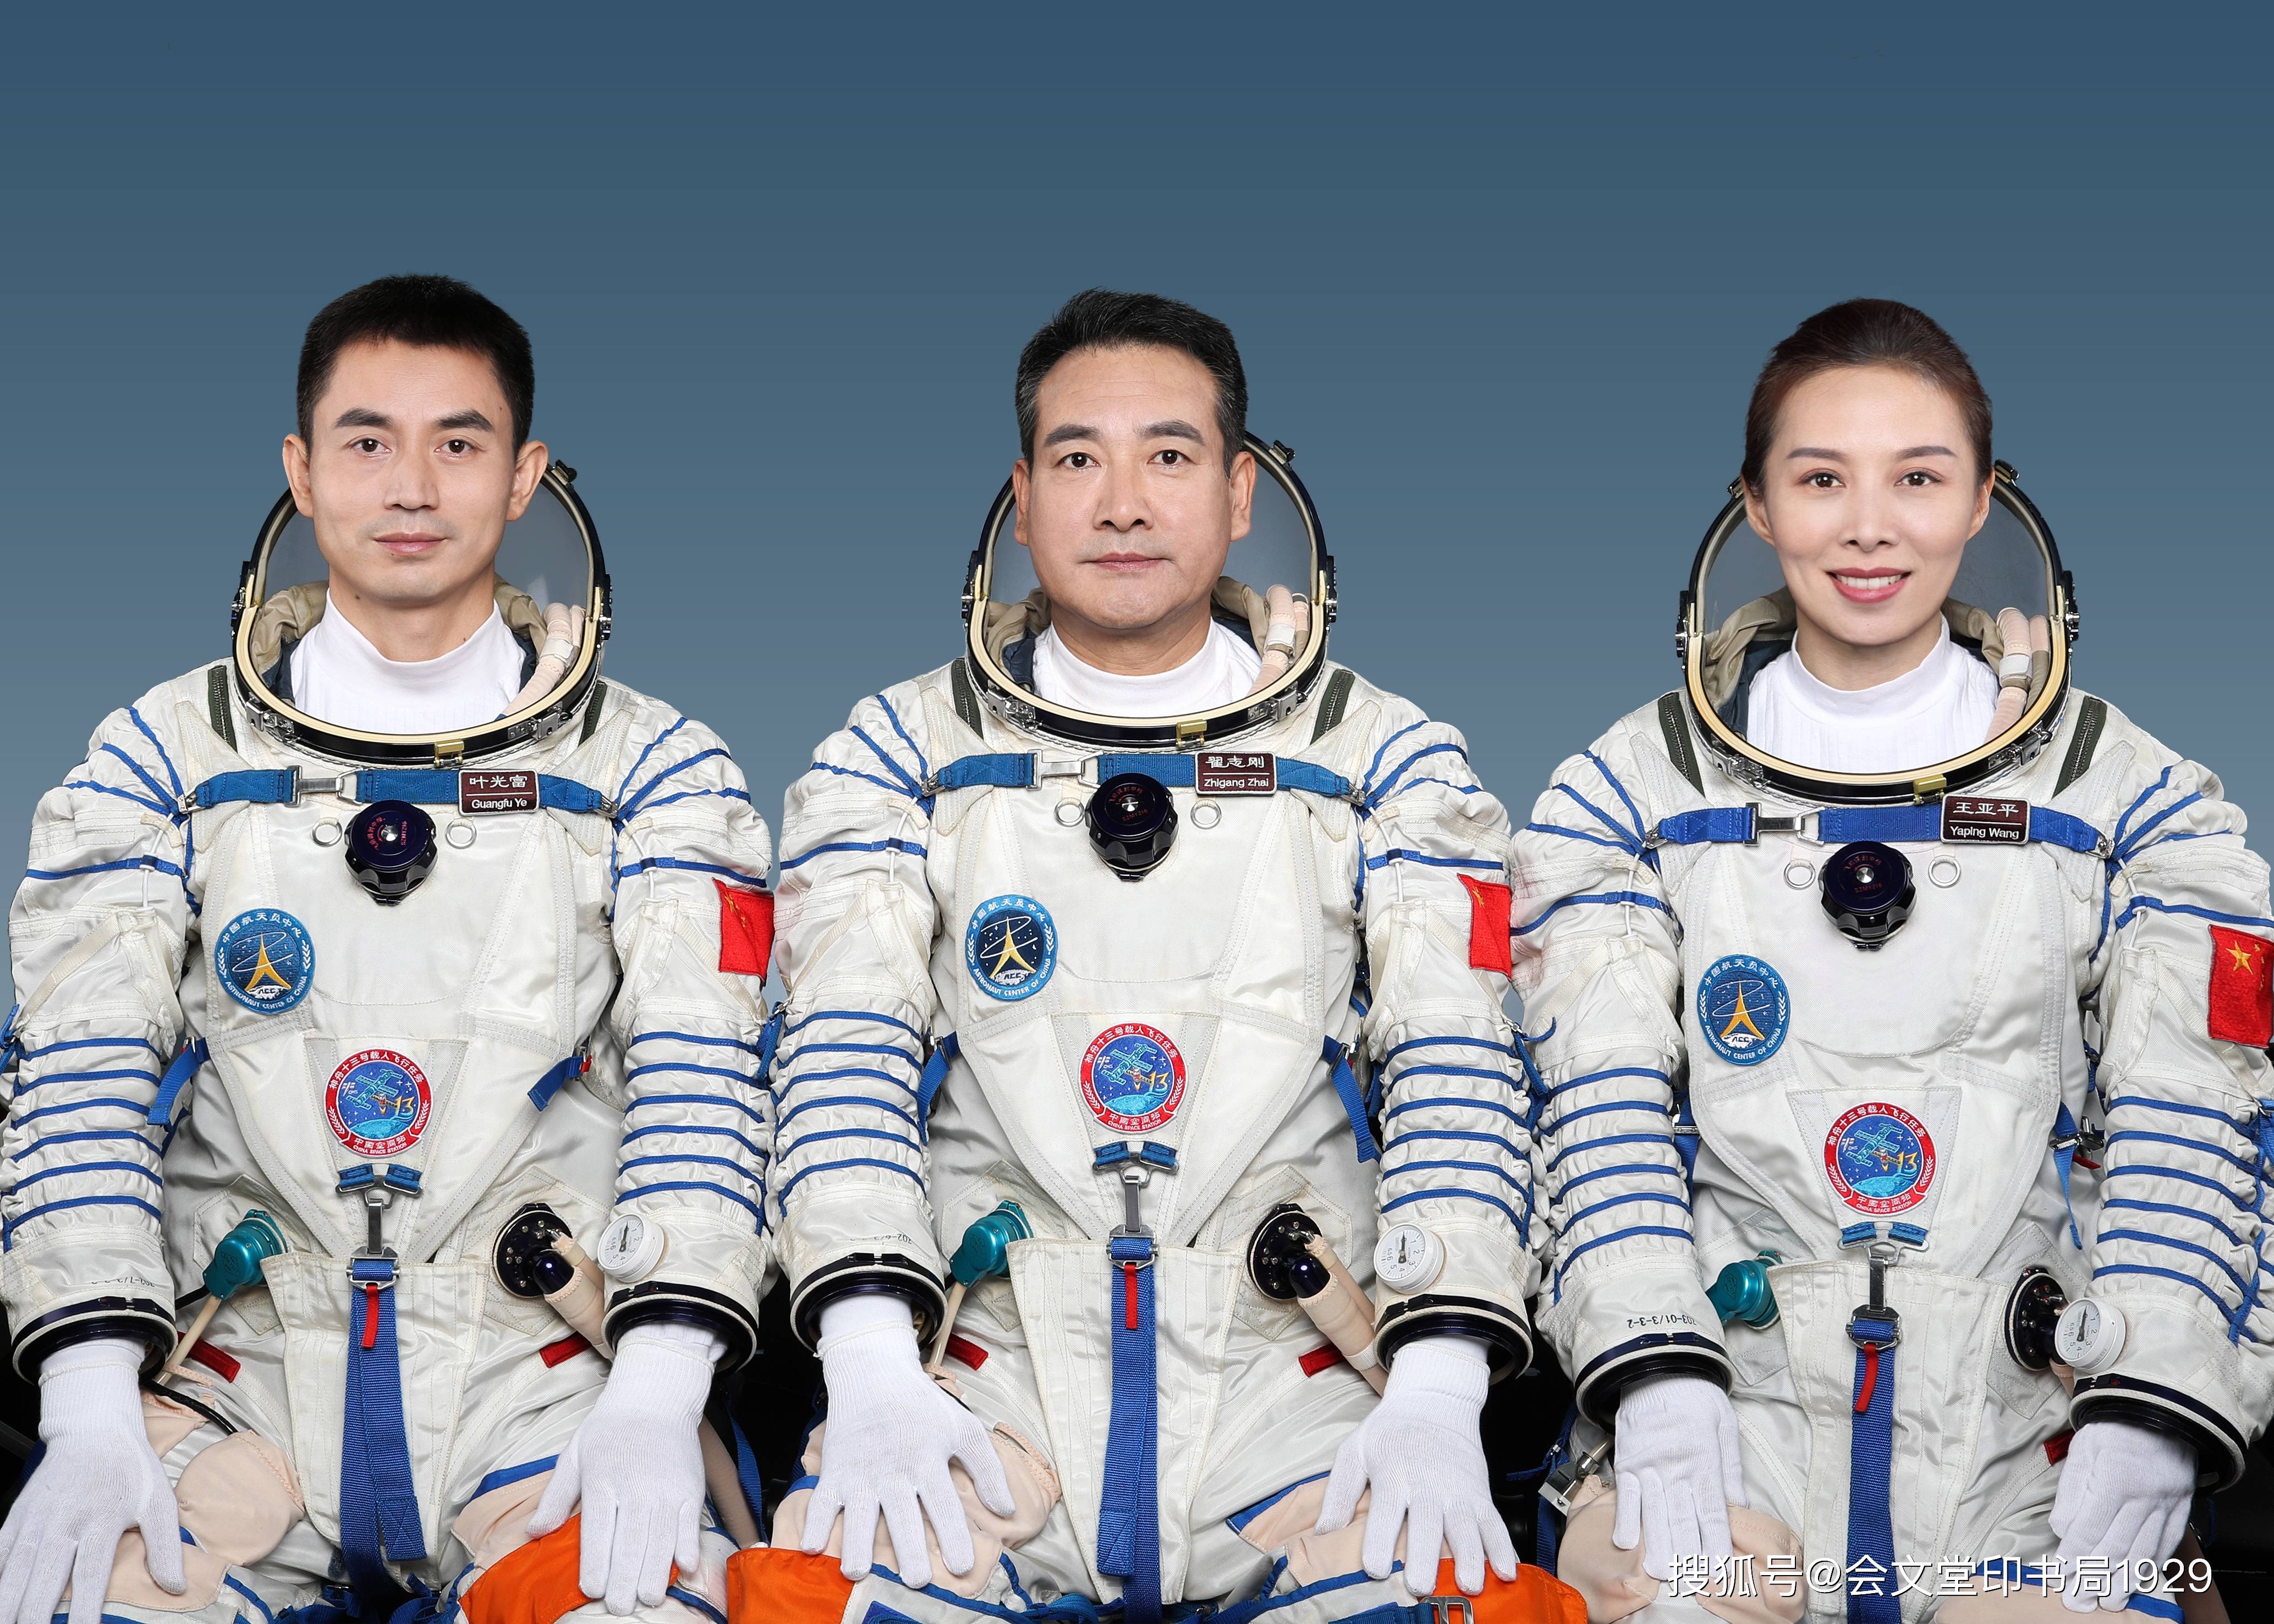 中国航天员航天服姓名标识牌的姓名拼写方式,也可采用先姓氏后名字的